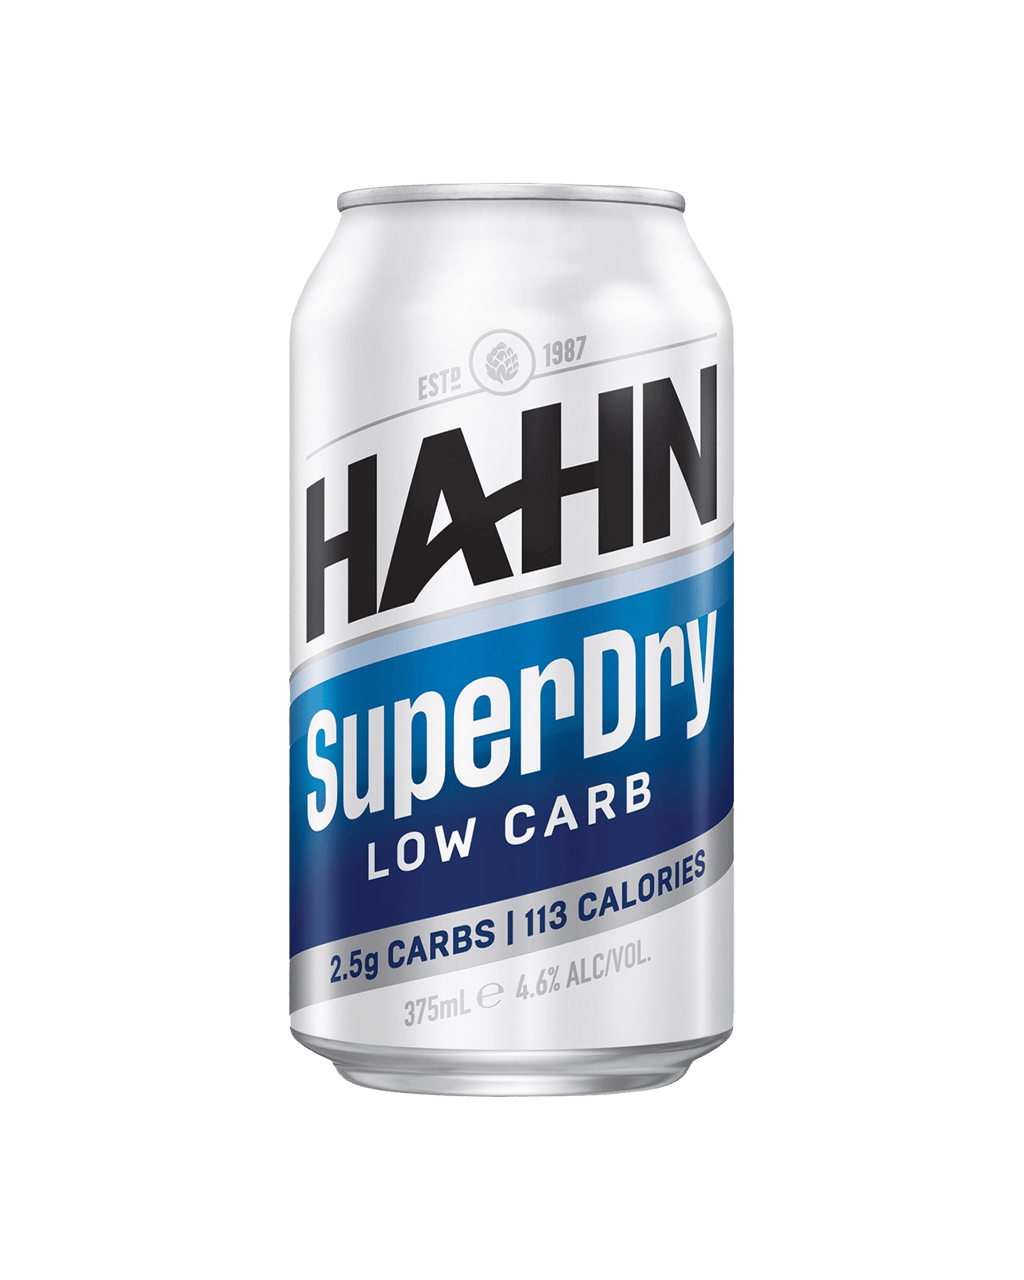 Hahn SuperDry, Low Carb Beer